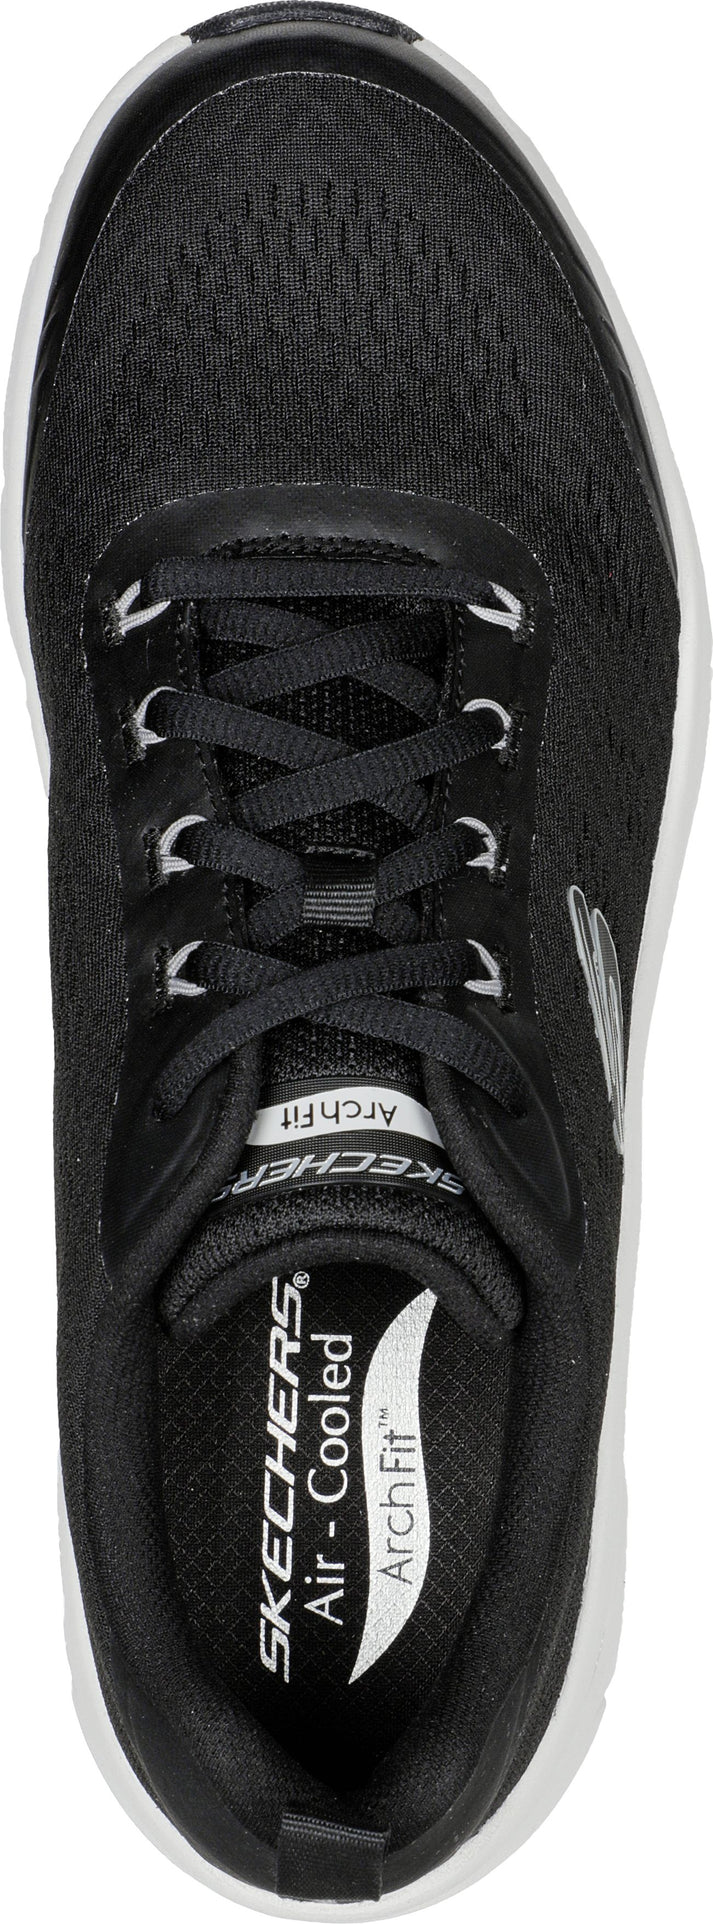 Skechers Shoes Arch Fit D'lux Sumner Black/white